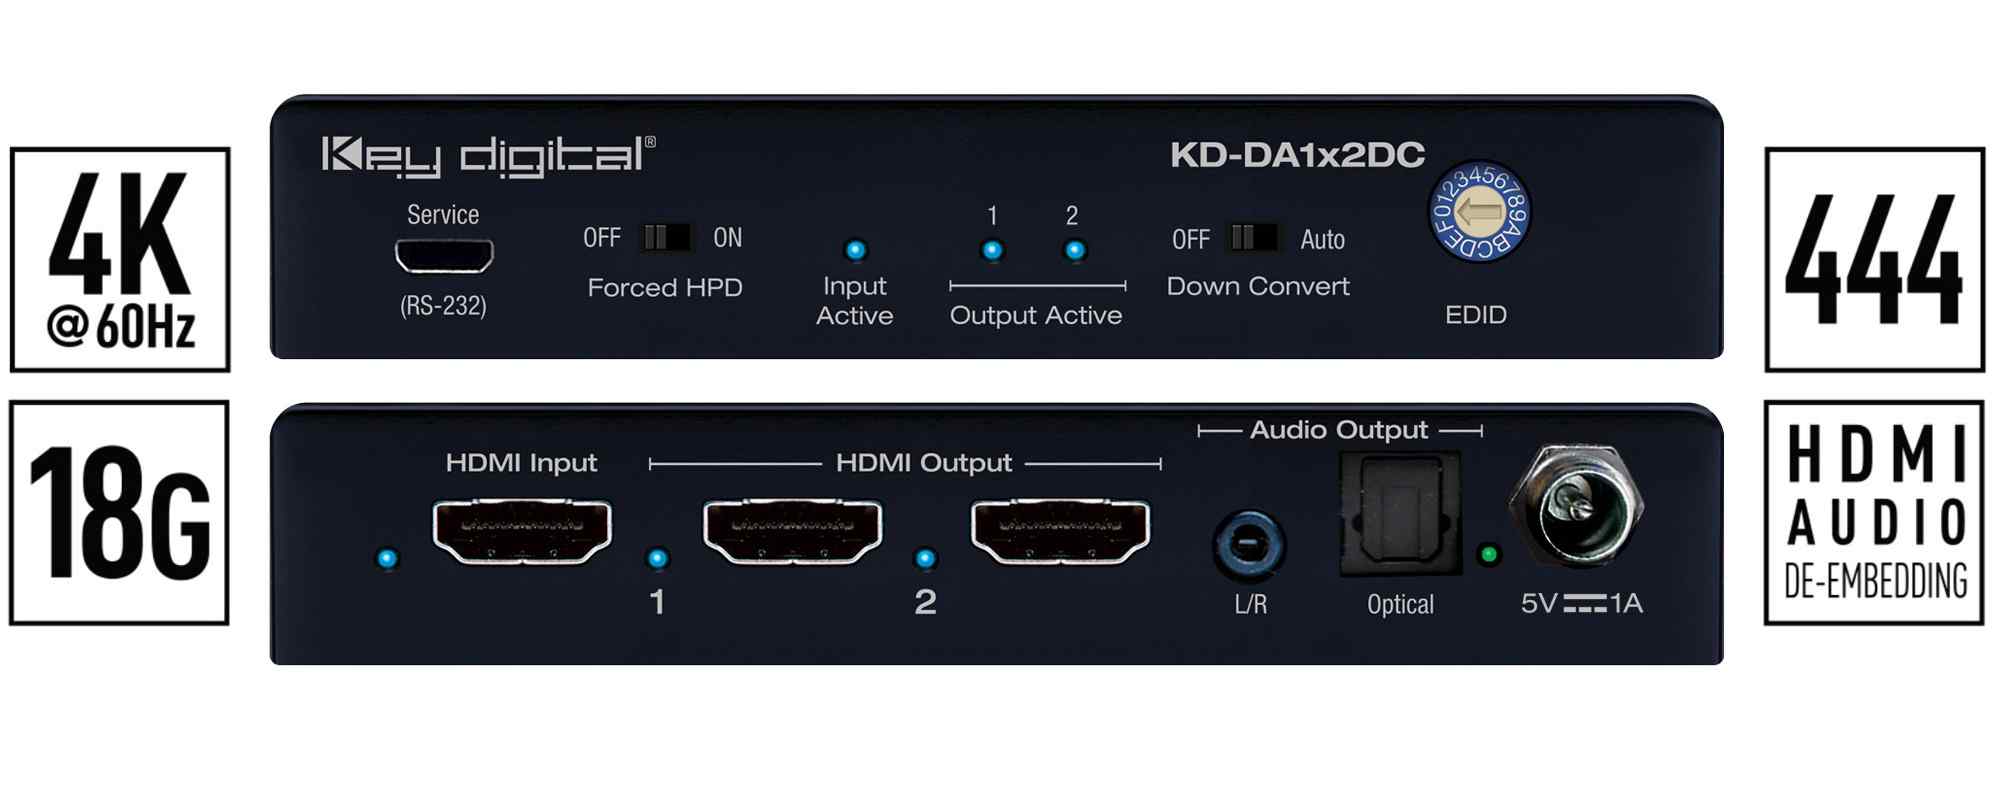 KD-DA1x2DC